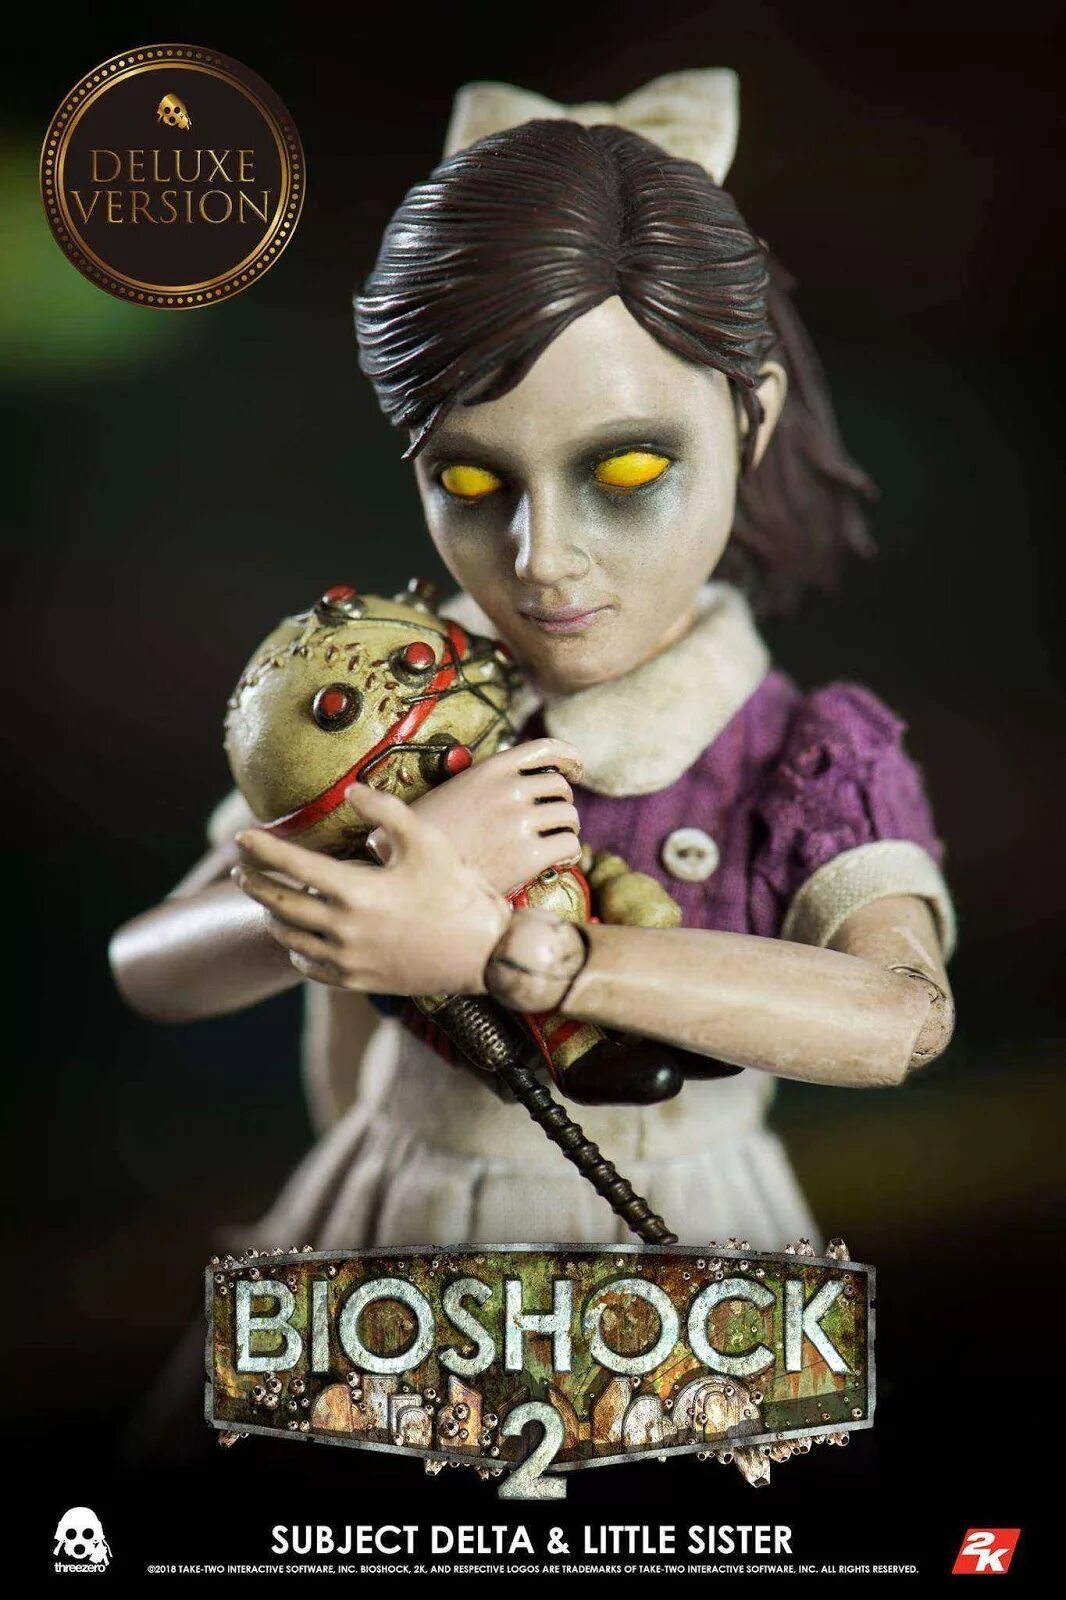 Маленькая сестричка Bioshock. THREEZERO Bioshock 1/6 subject Delta. Subject Delta Bioshock 2. Биошок маленькие сестрички.